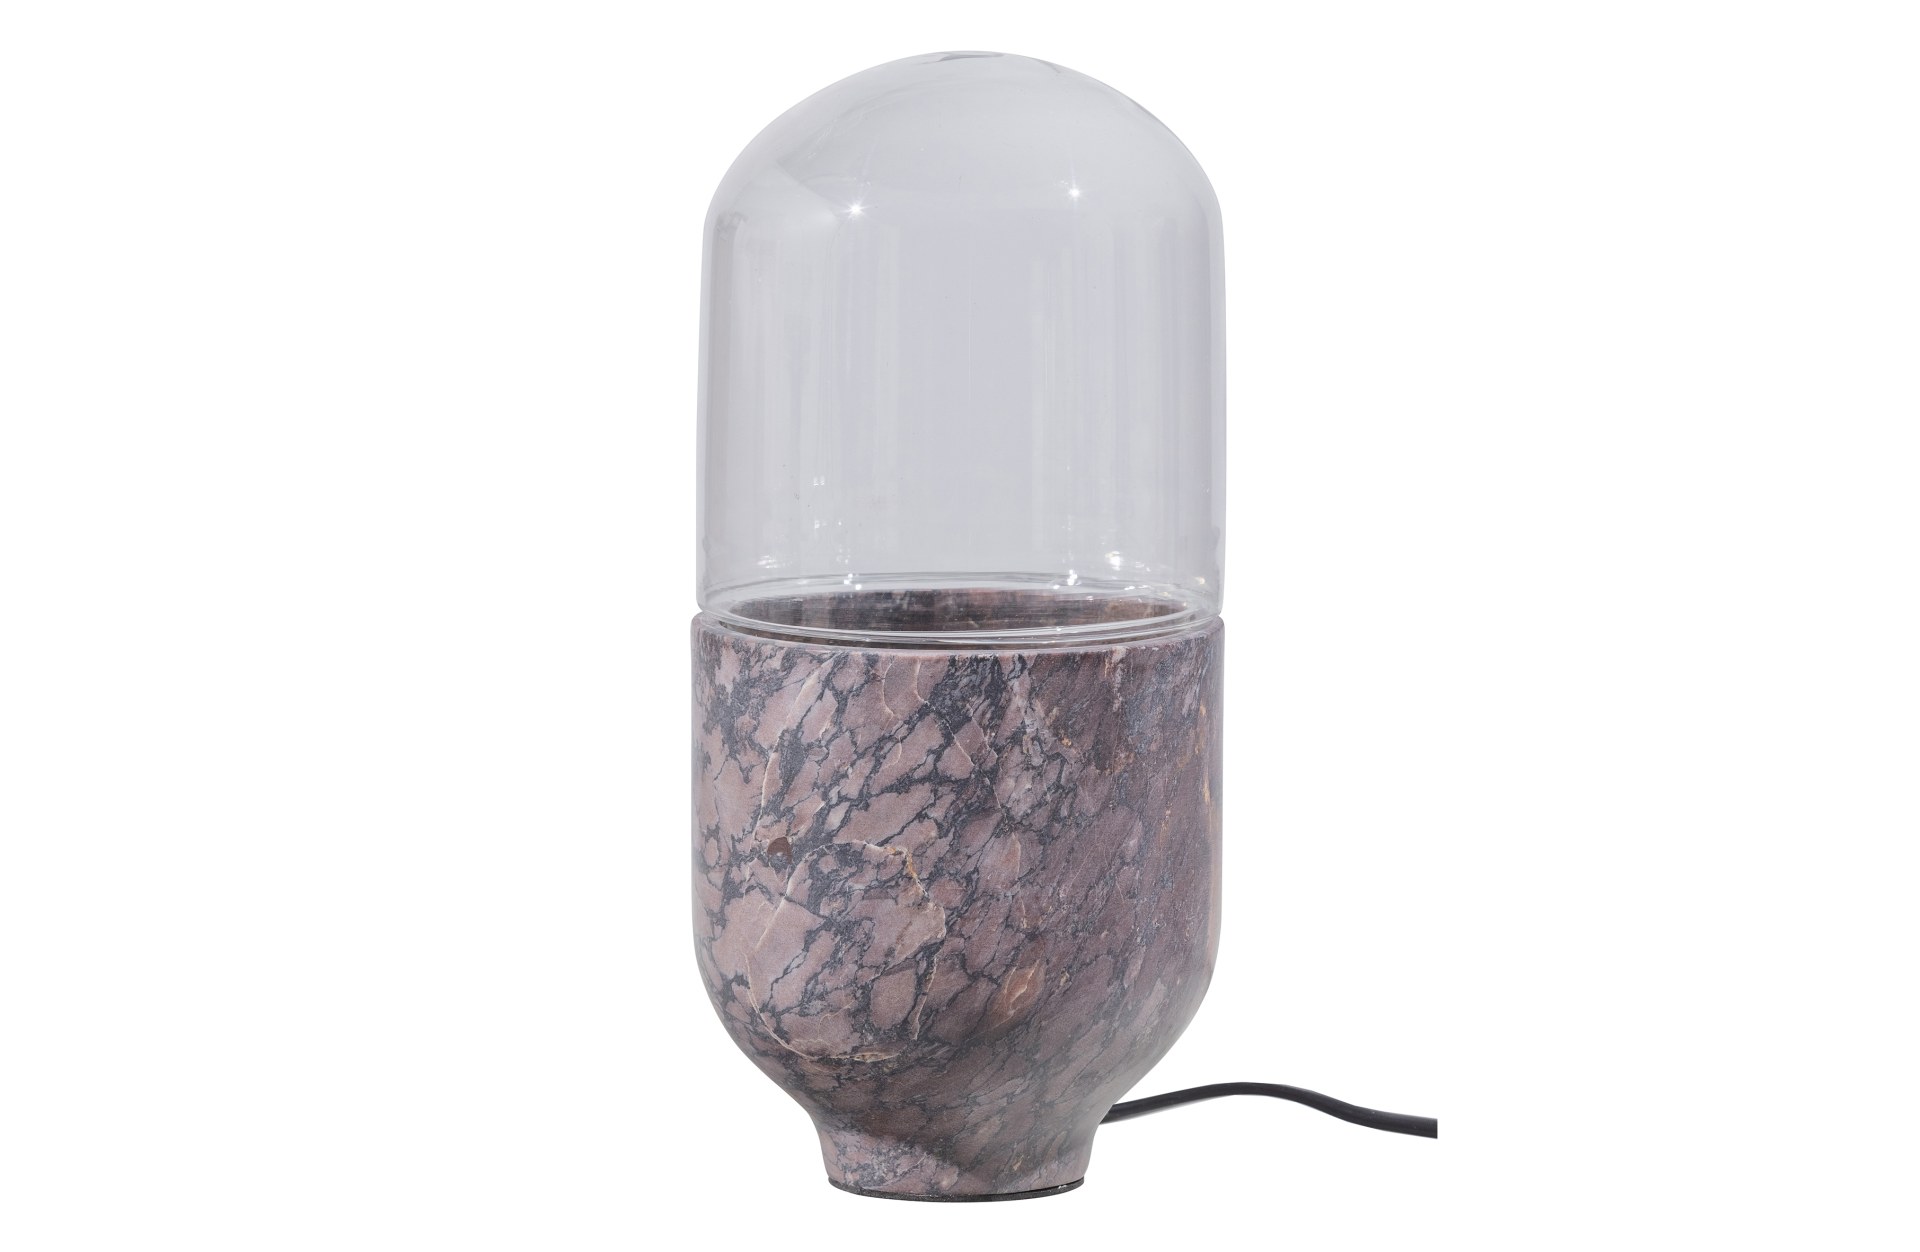 Die Tischlampe Asel überzeugt mit ihrem besonderem Design. Gefertigt wurde die Lampe aus Glas in Marmoroptik, welches einen grauen Farbton besitzt.